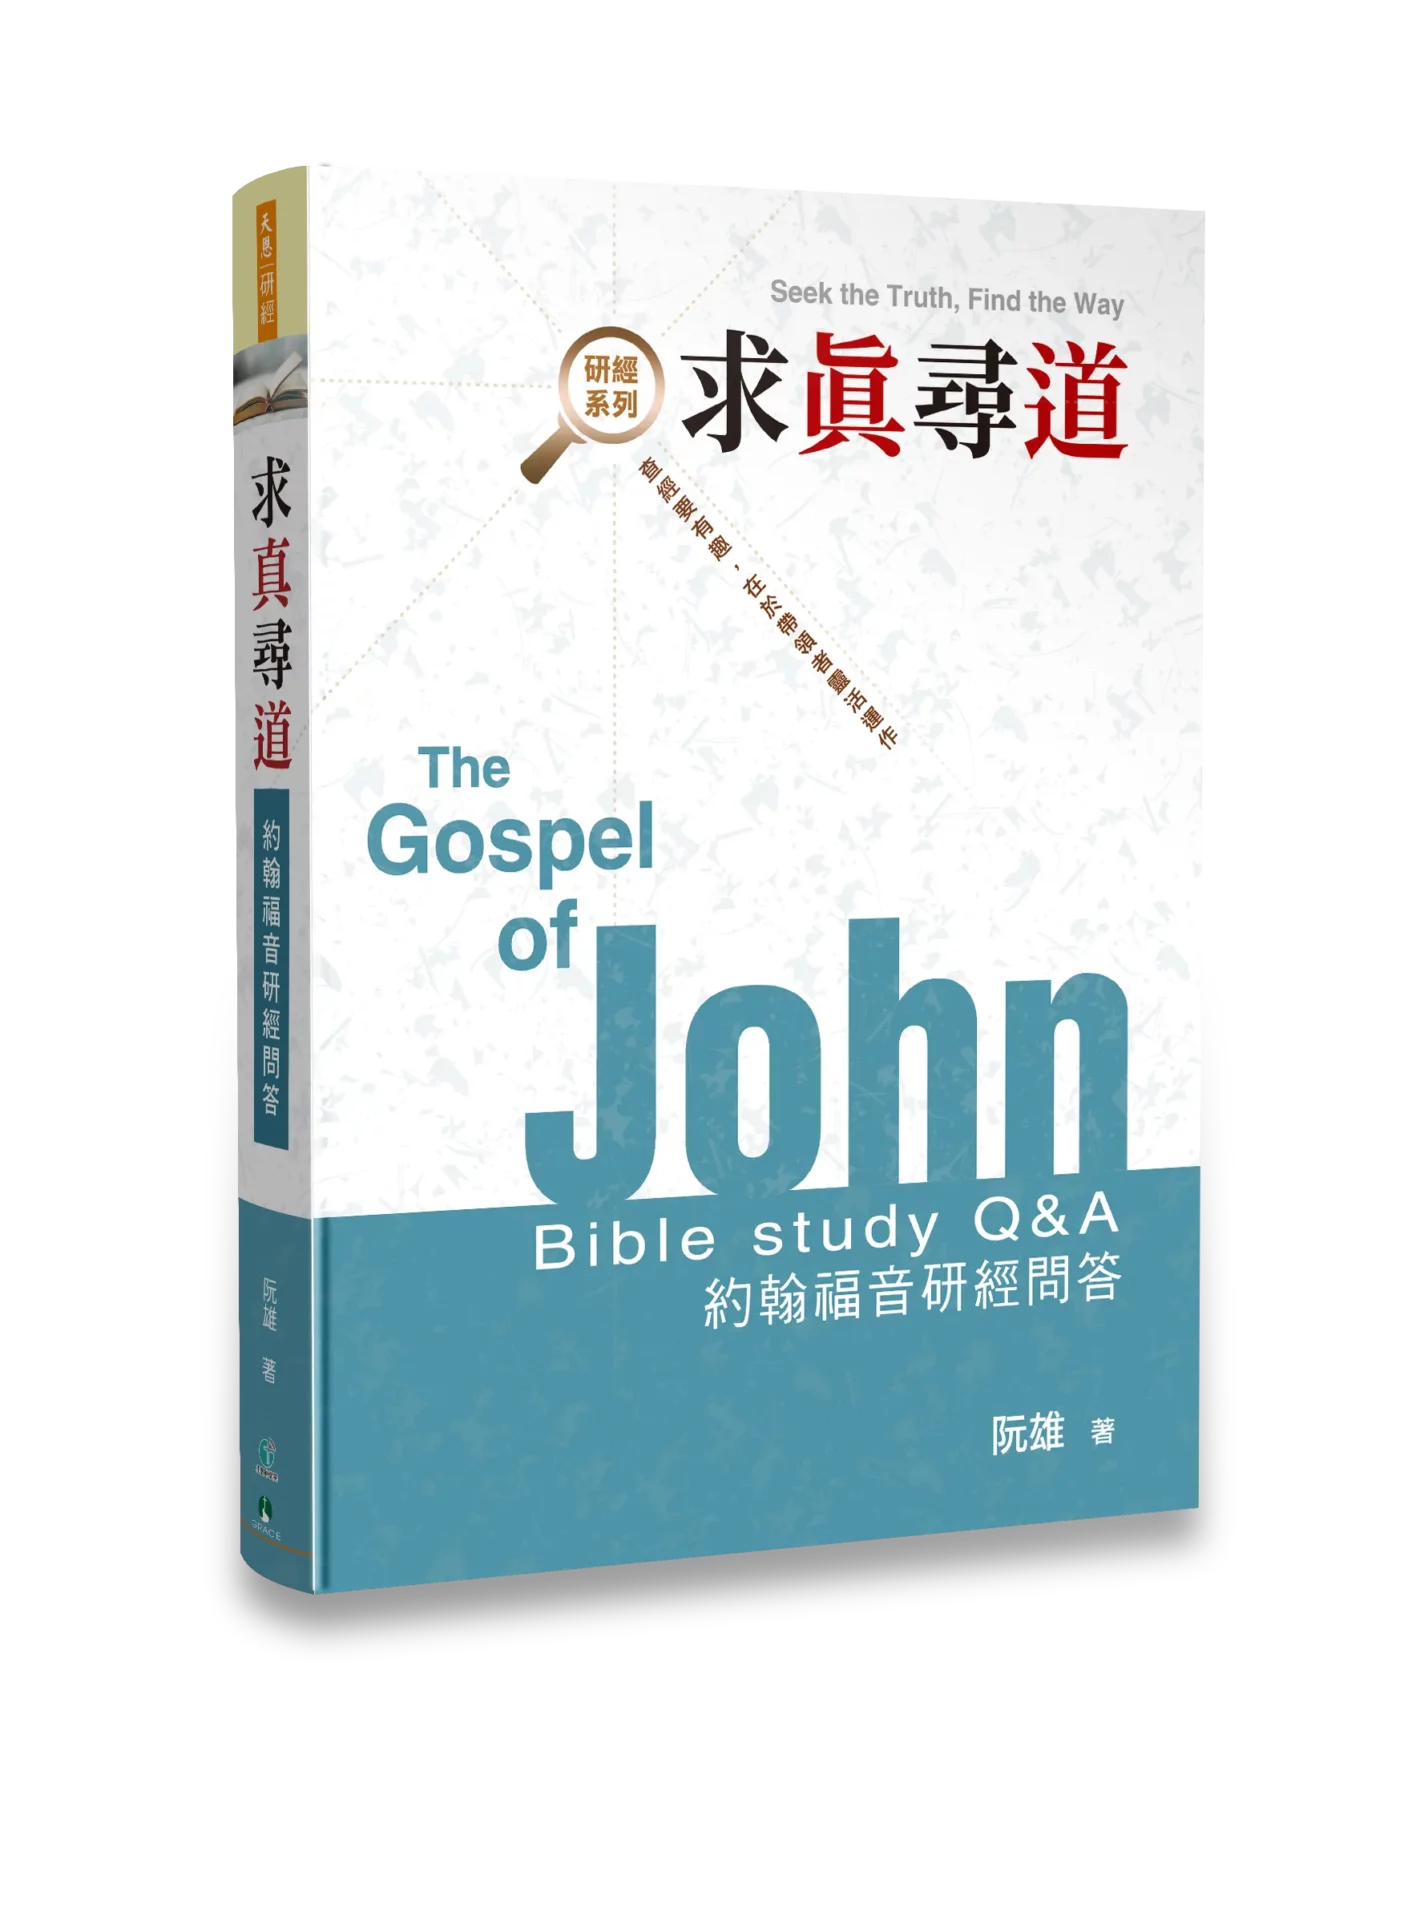 求真尋道 —— 約翰福音研經問答 The Gospel of John Bible Study Q&A